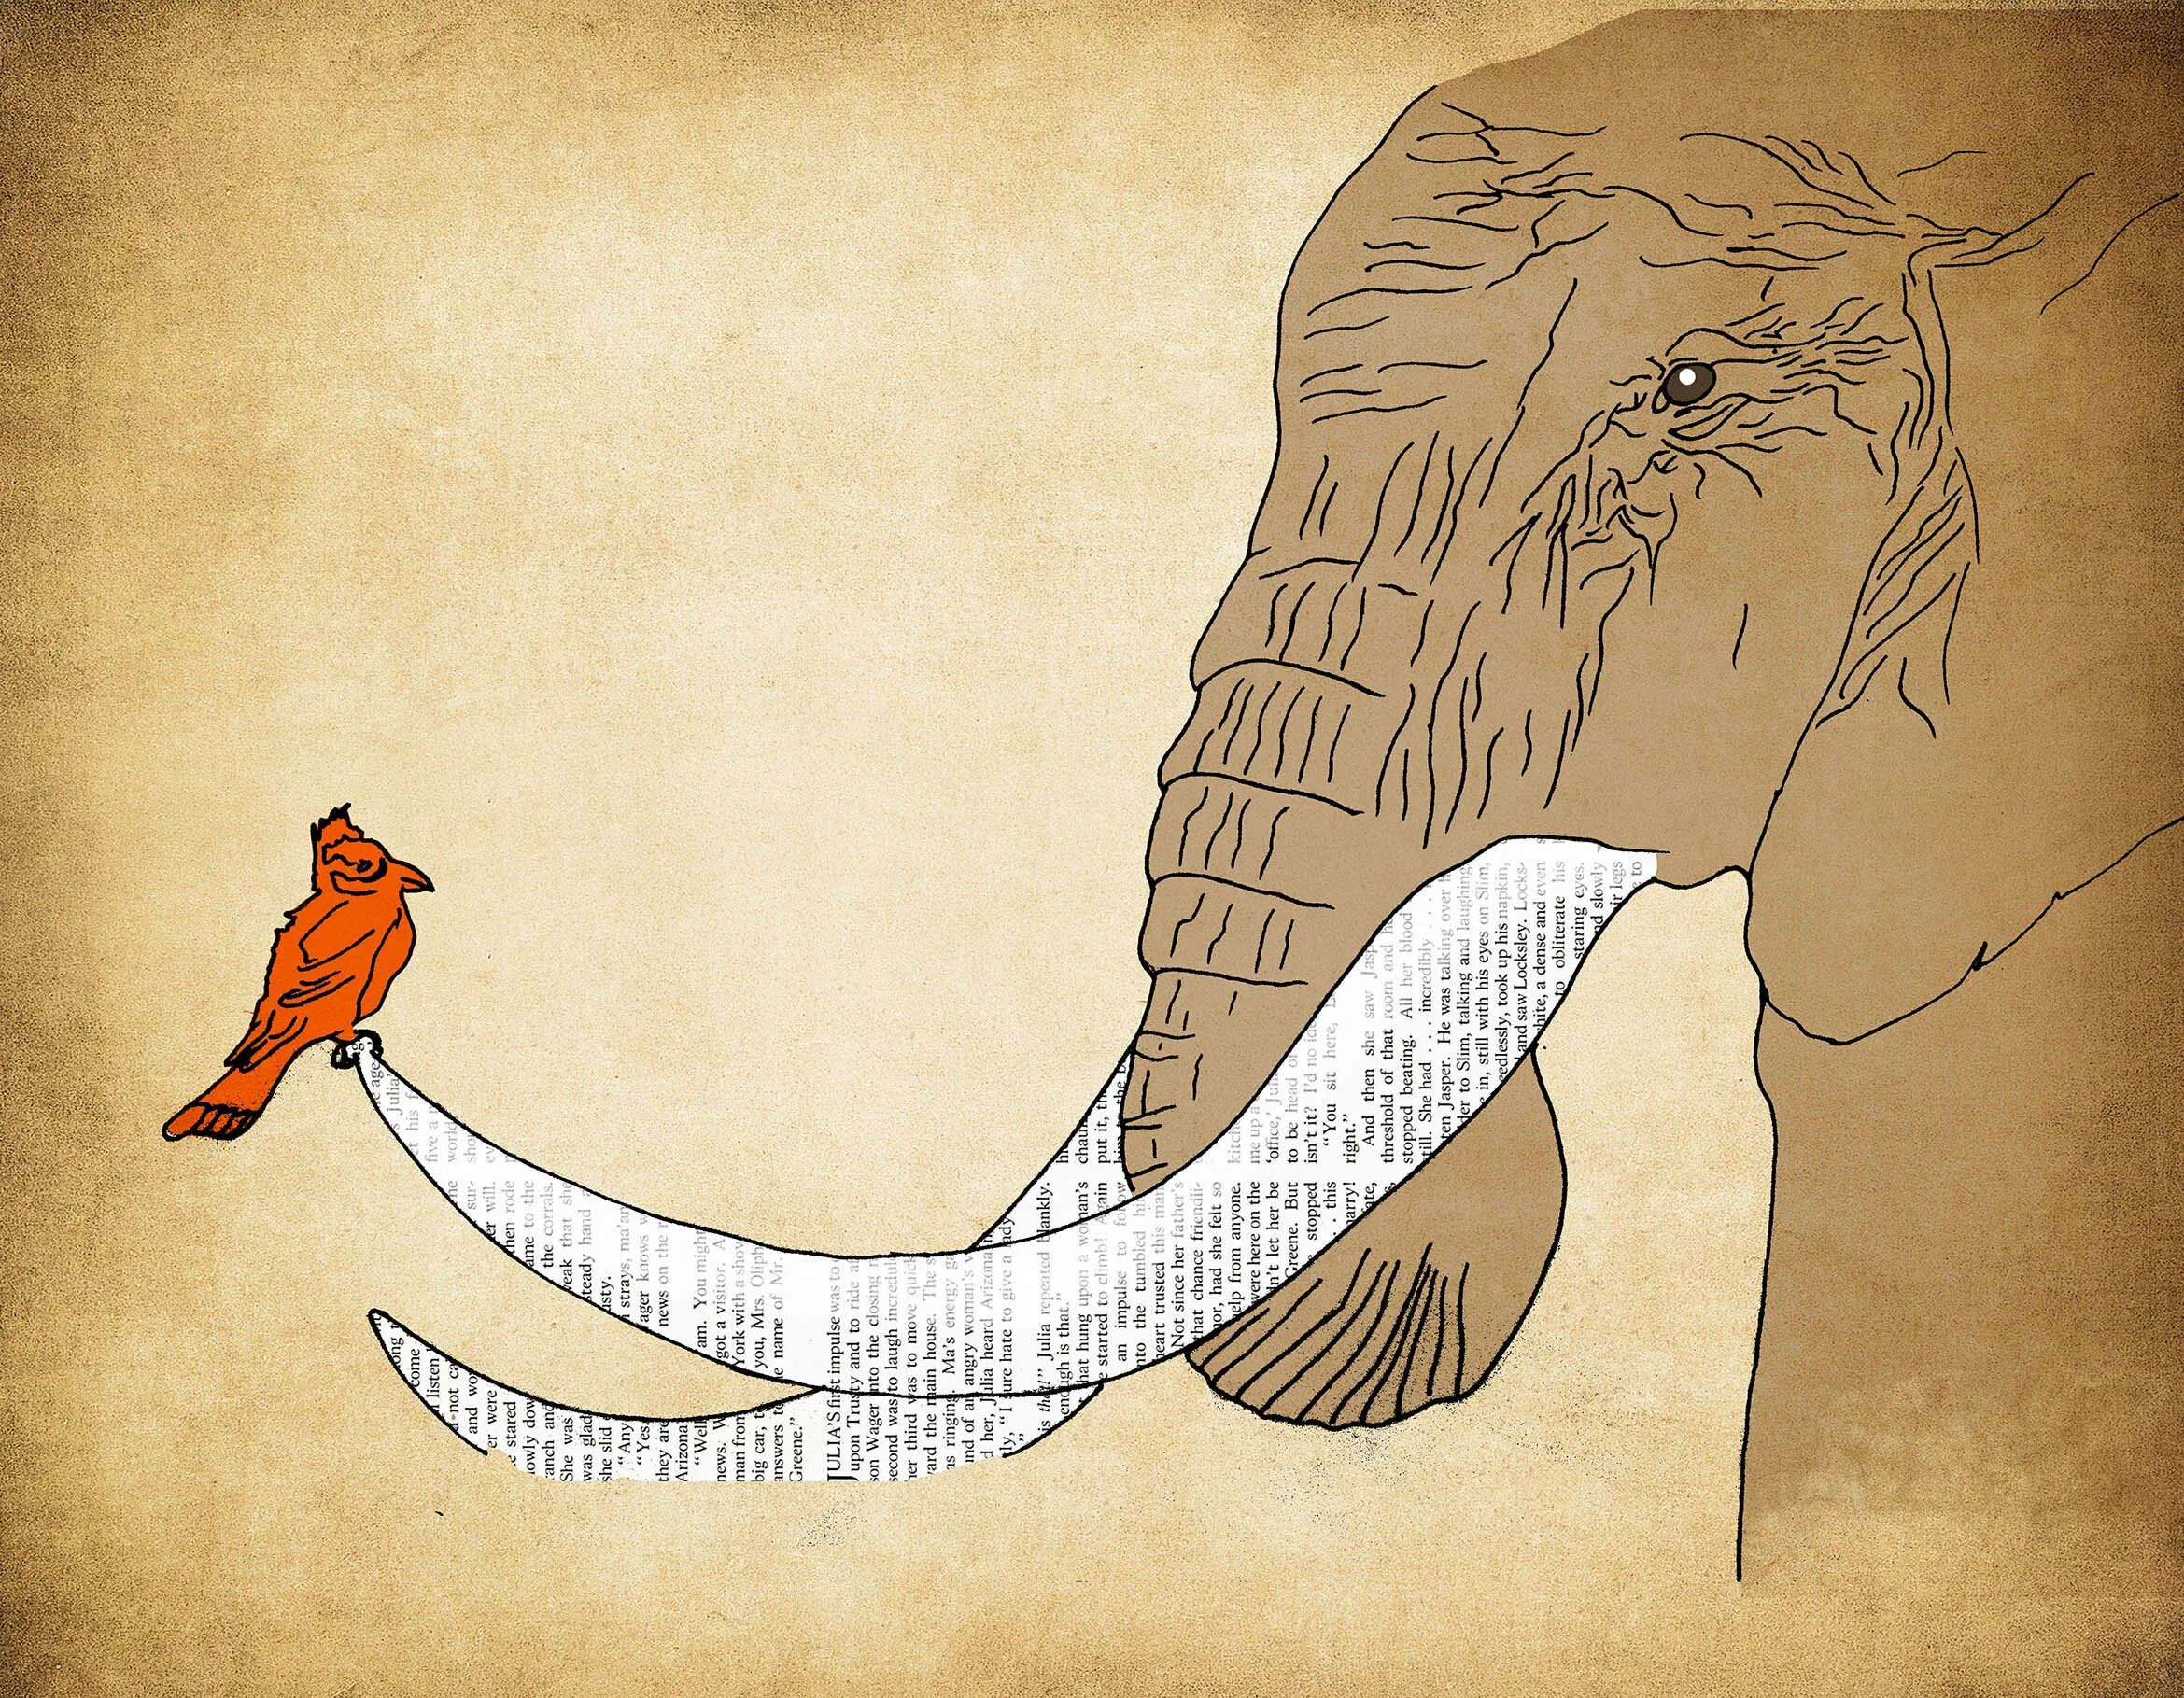 Elephant bird. Дракон и слон иллюстрация. Rikako Elephant. Dios - Darkroom иллюстрации.